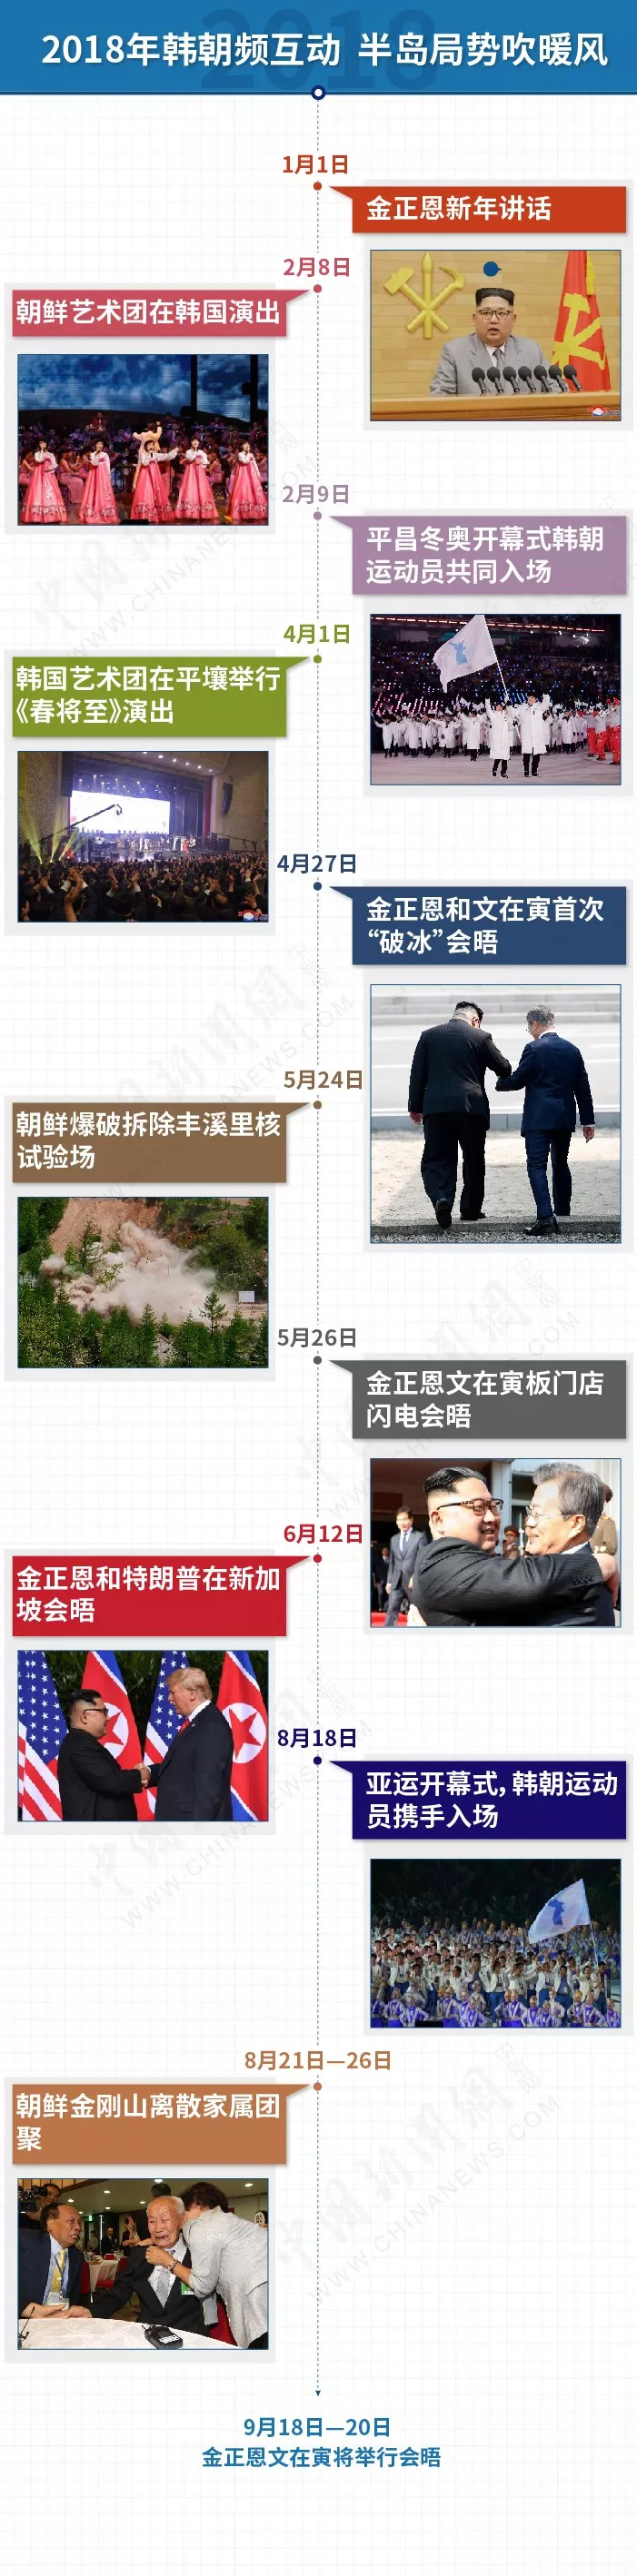 圖自中國新聞網